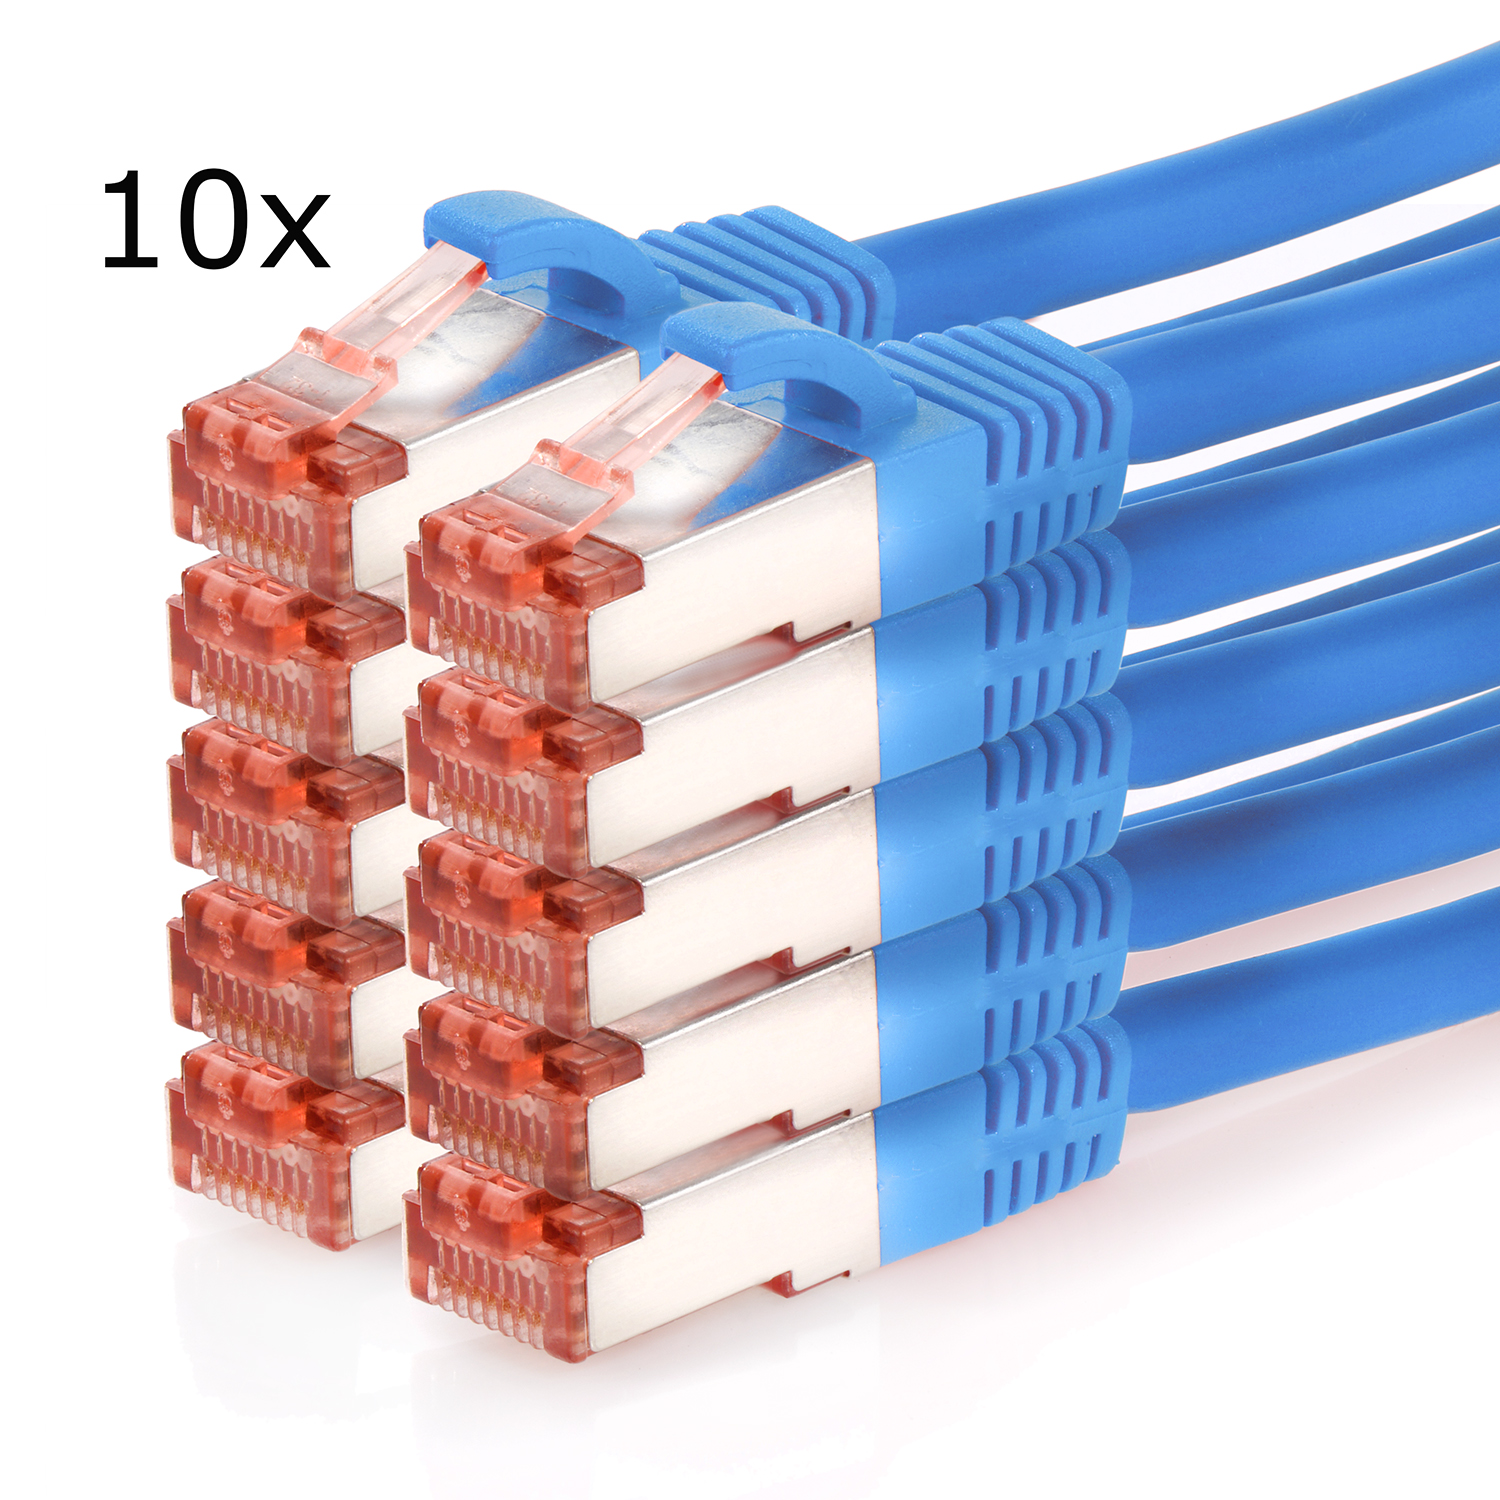 10er / Netzwerkkabel 2m S/FTP 1000Mbit, blau, Pack Netzwerkkabel, m 2 TPFNET Patchkabel